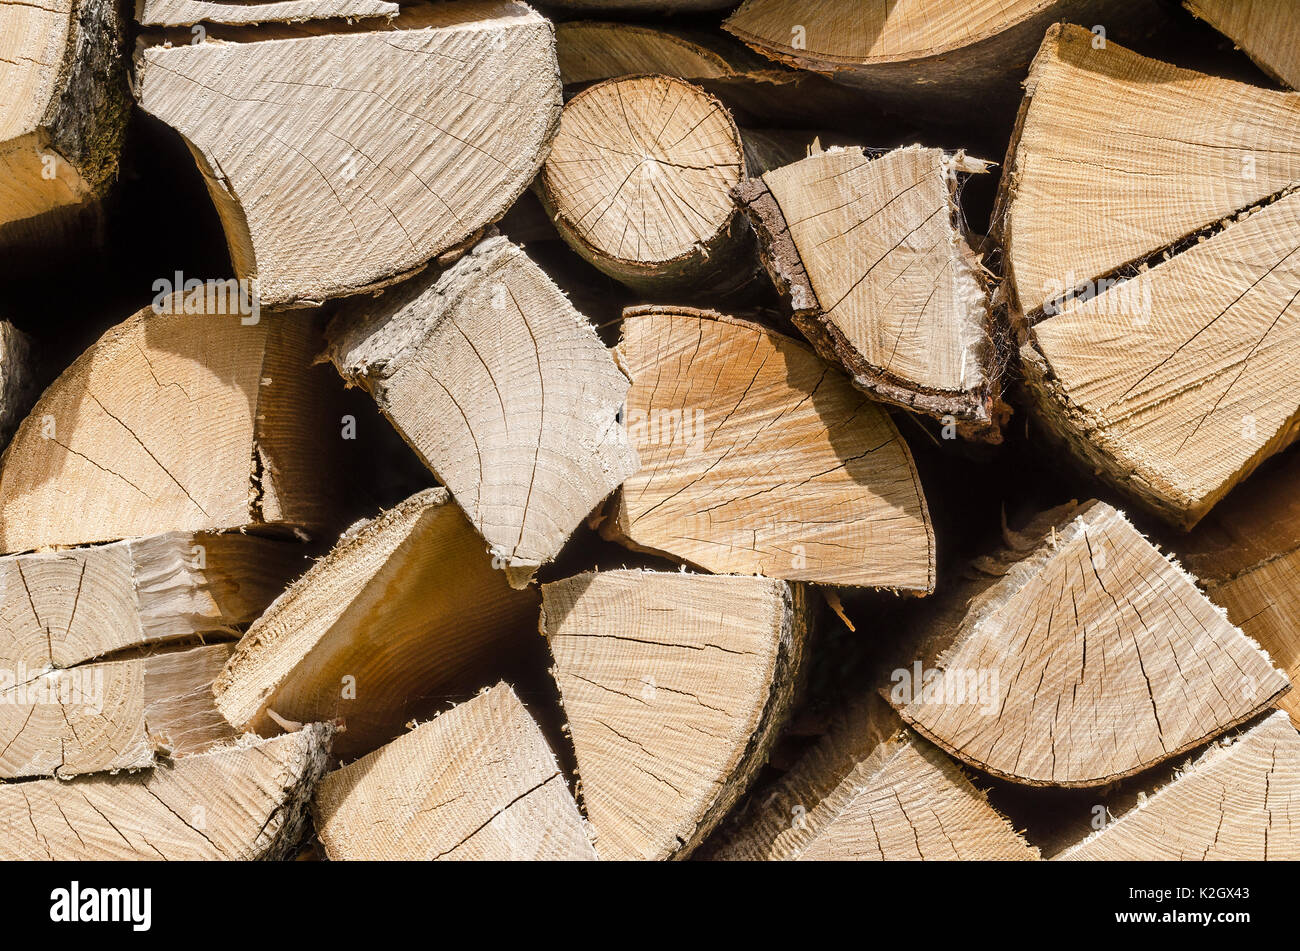 Coupée, séchée et de bois empilées horizontales, vue de face. Pile de bois sec, vieilli, une source d'énergie. Photo. Banque D'Images